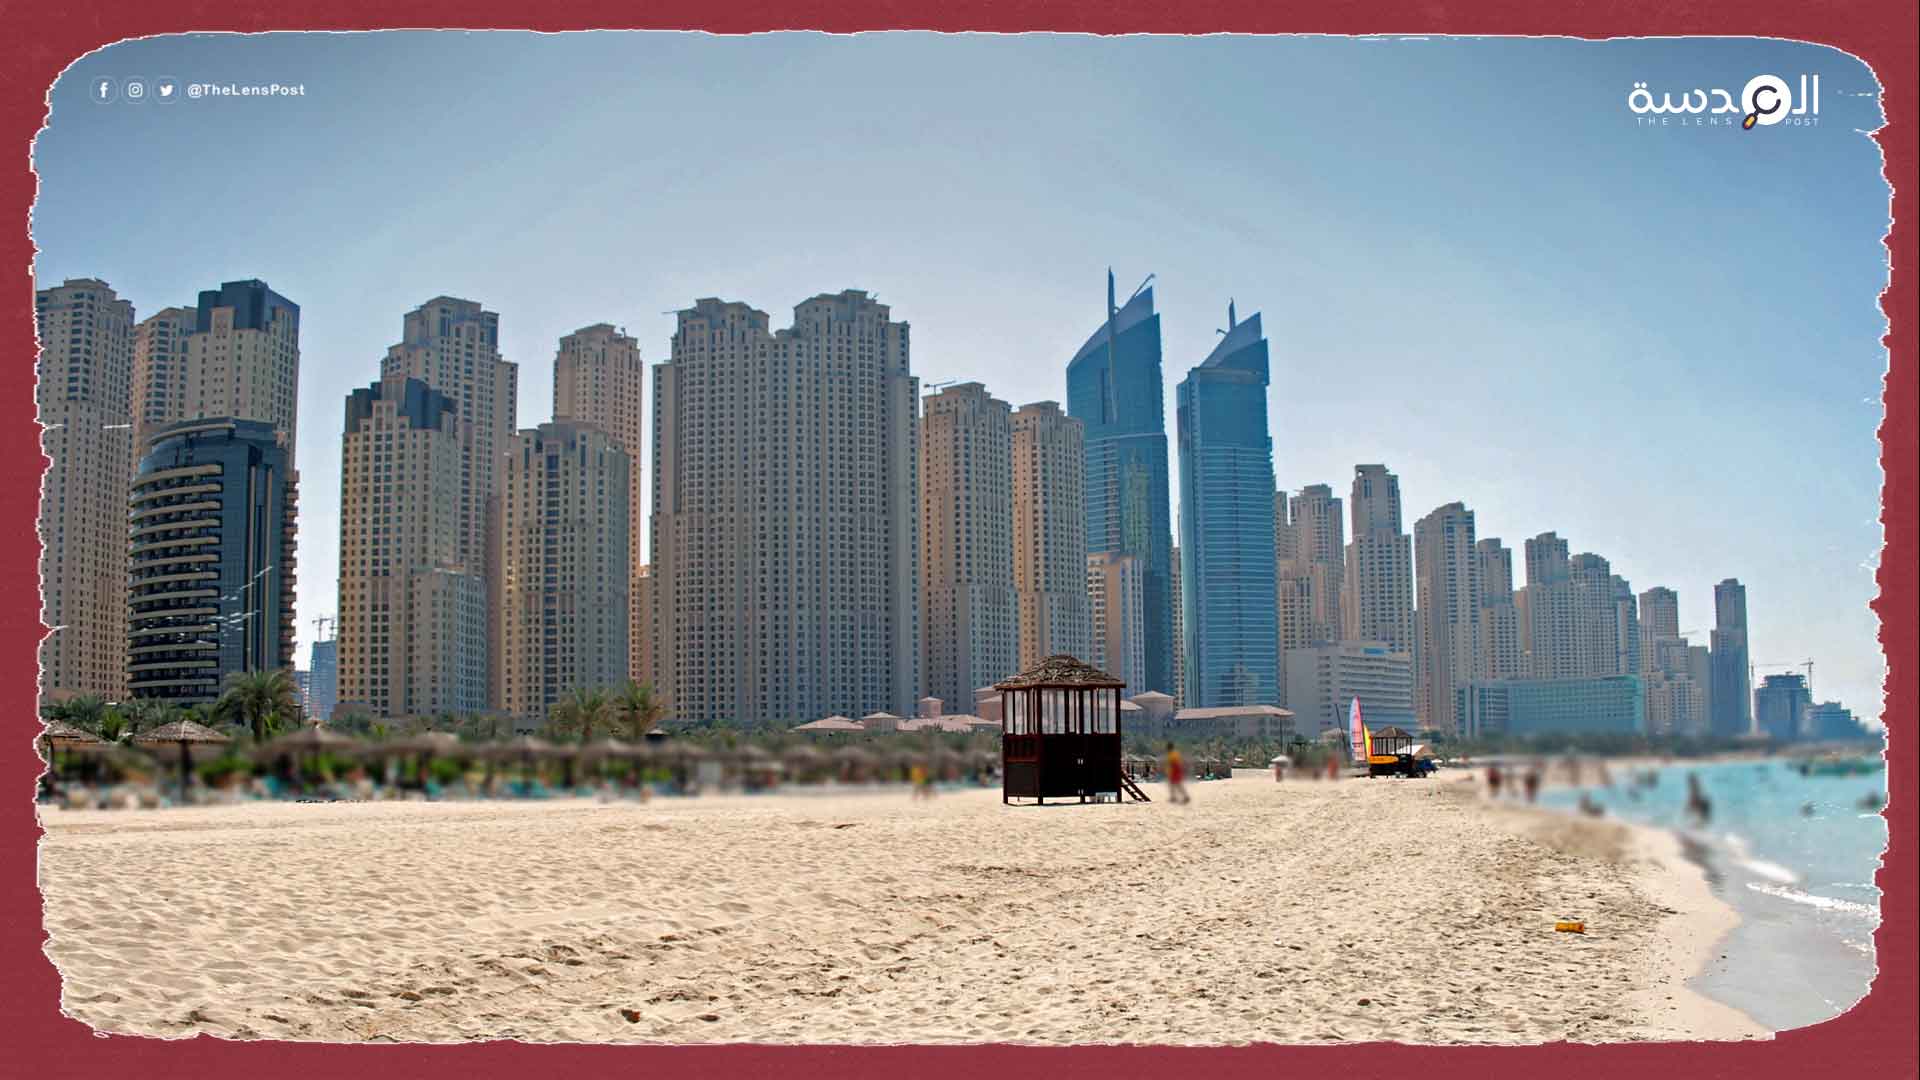 سلطات دبي تجمع أسماء قاطني العقارات بعد إقرارها قانون "المساكنة"